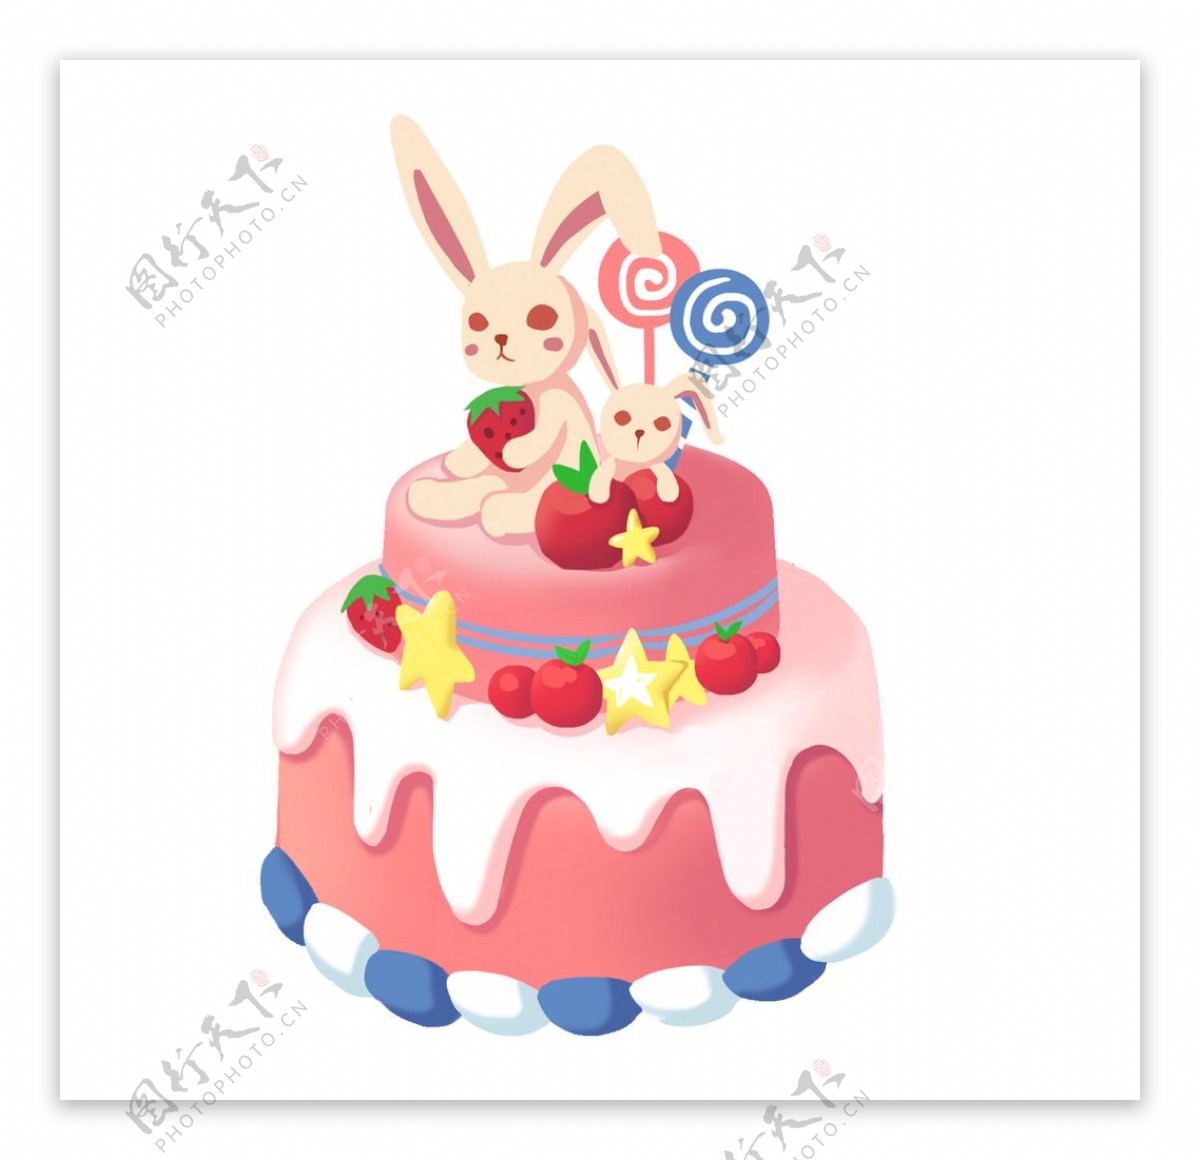 翻糖萌小兔蛋糕的做法_【图解】翻糖萌小兔蛋糕怎么做如何做好吃_翻糖萌小兔蛋糕家常做法大全_Carrygaoli_豆果美食